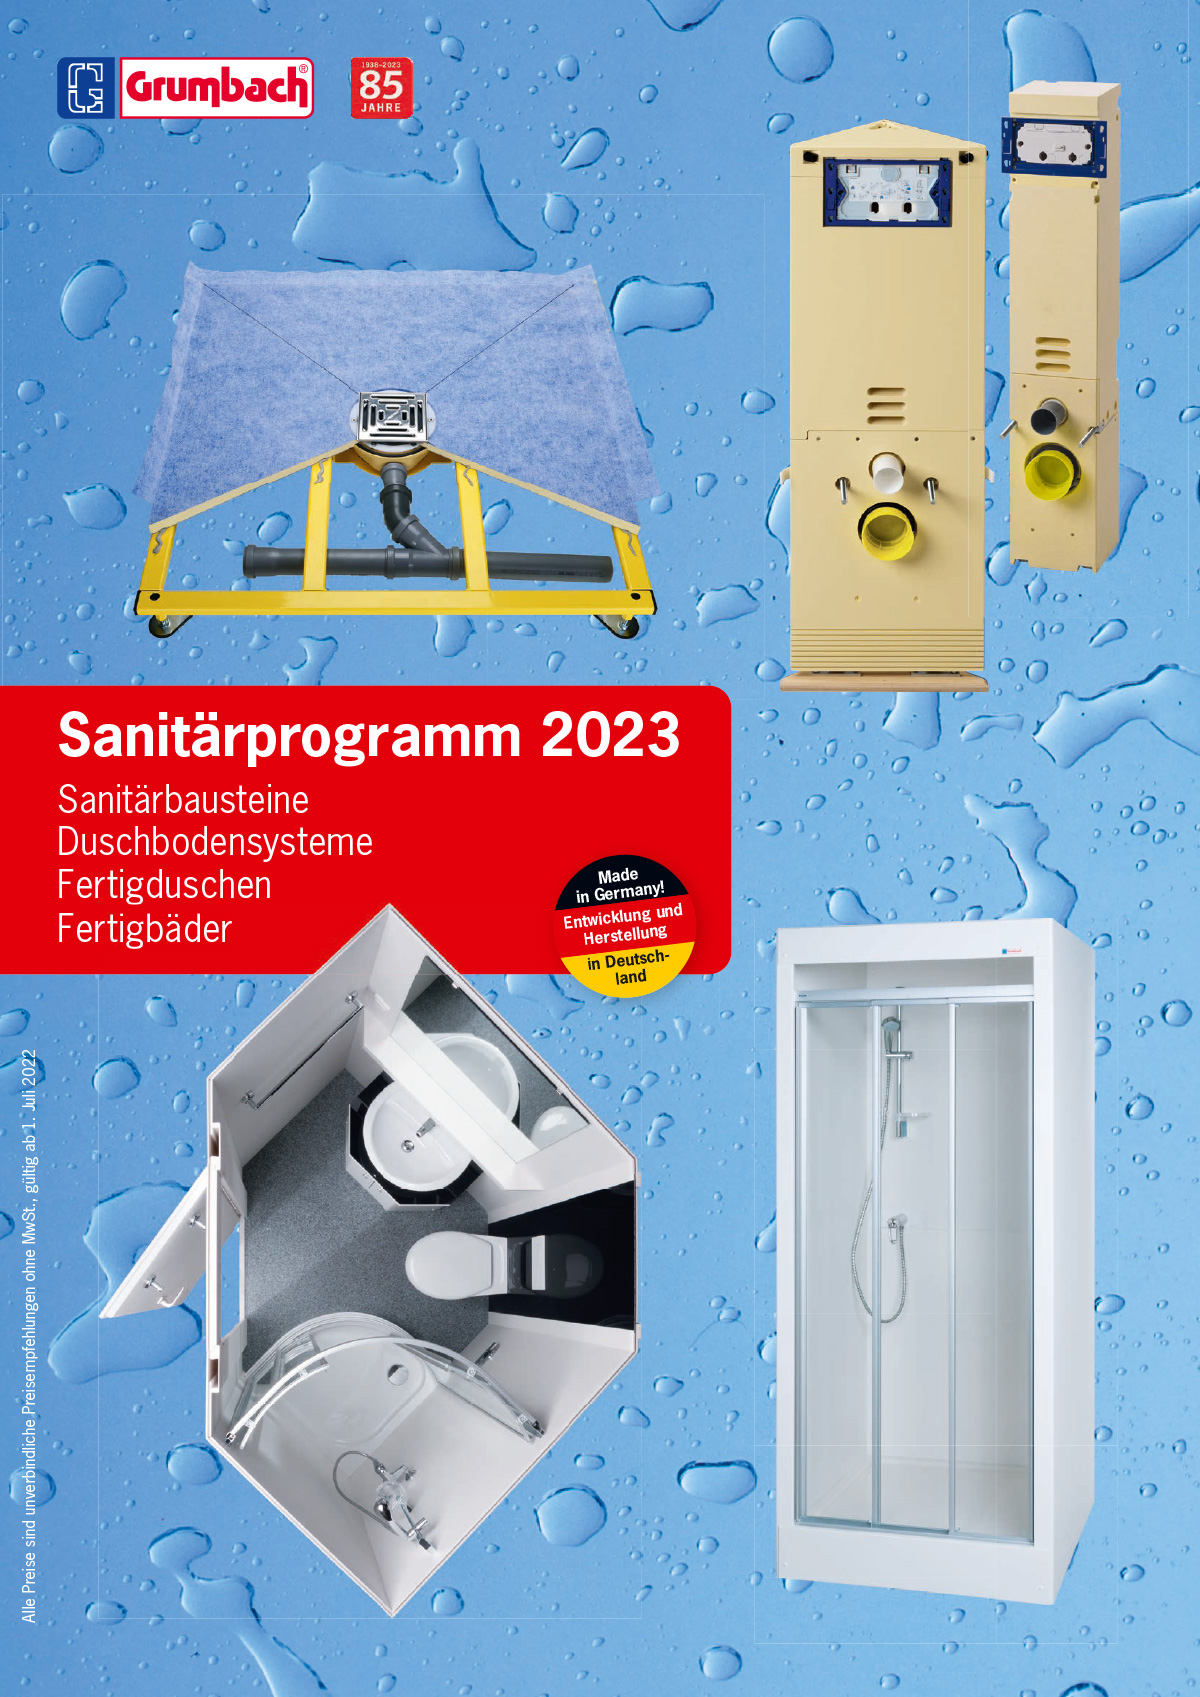 Titel-Grumbach-Sanitaerprogramm-2022-I-gesamt